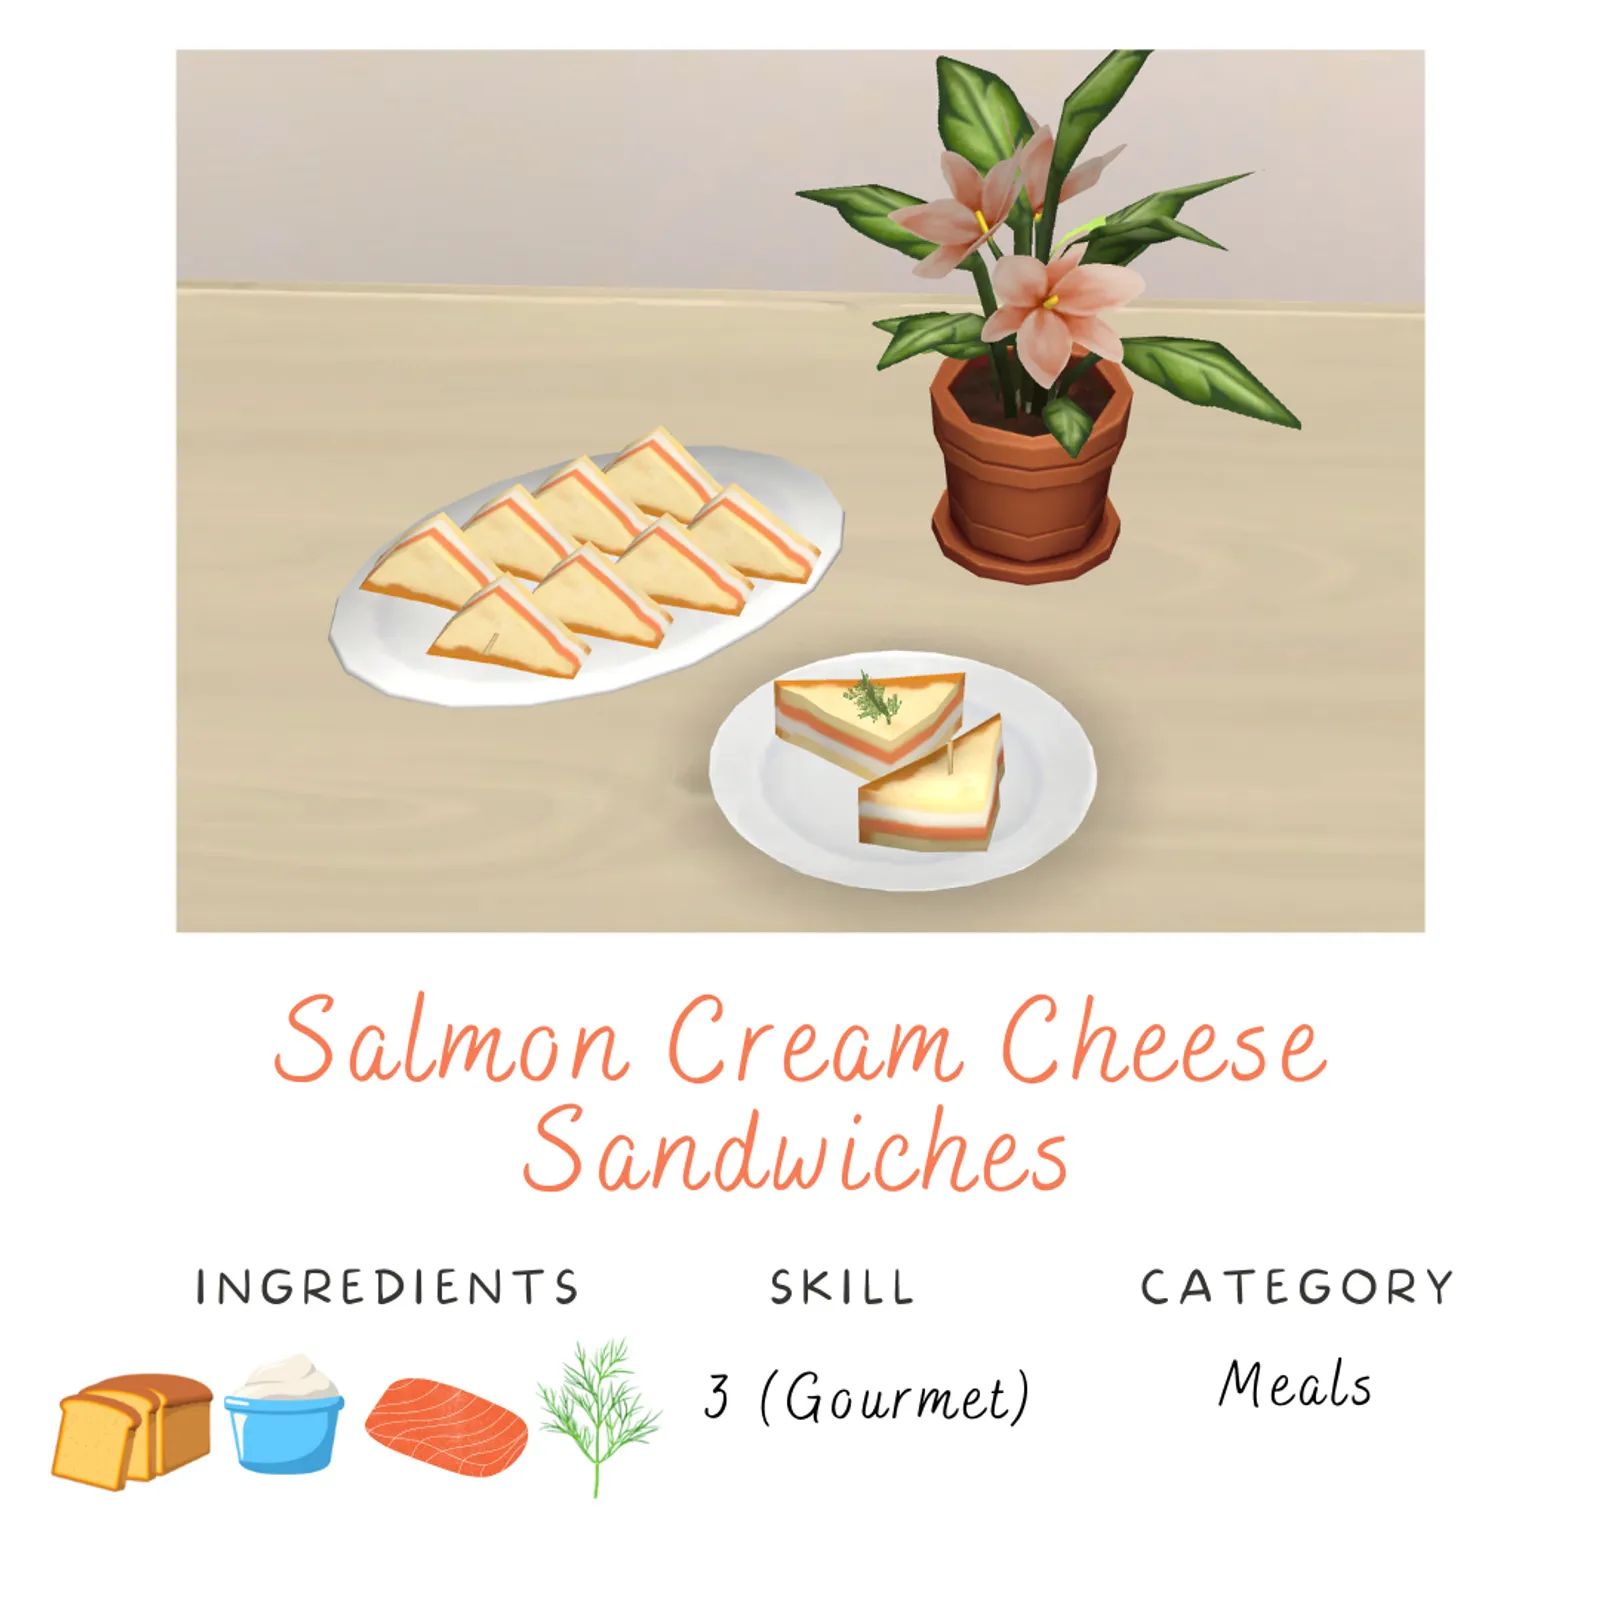 Salmon Cream Cheese Sandwiches